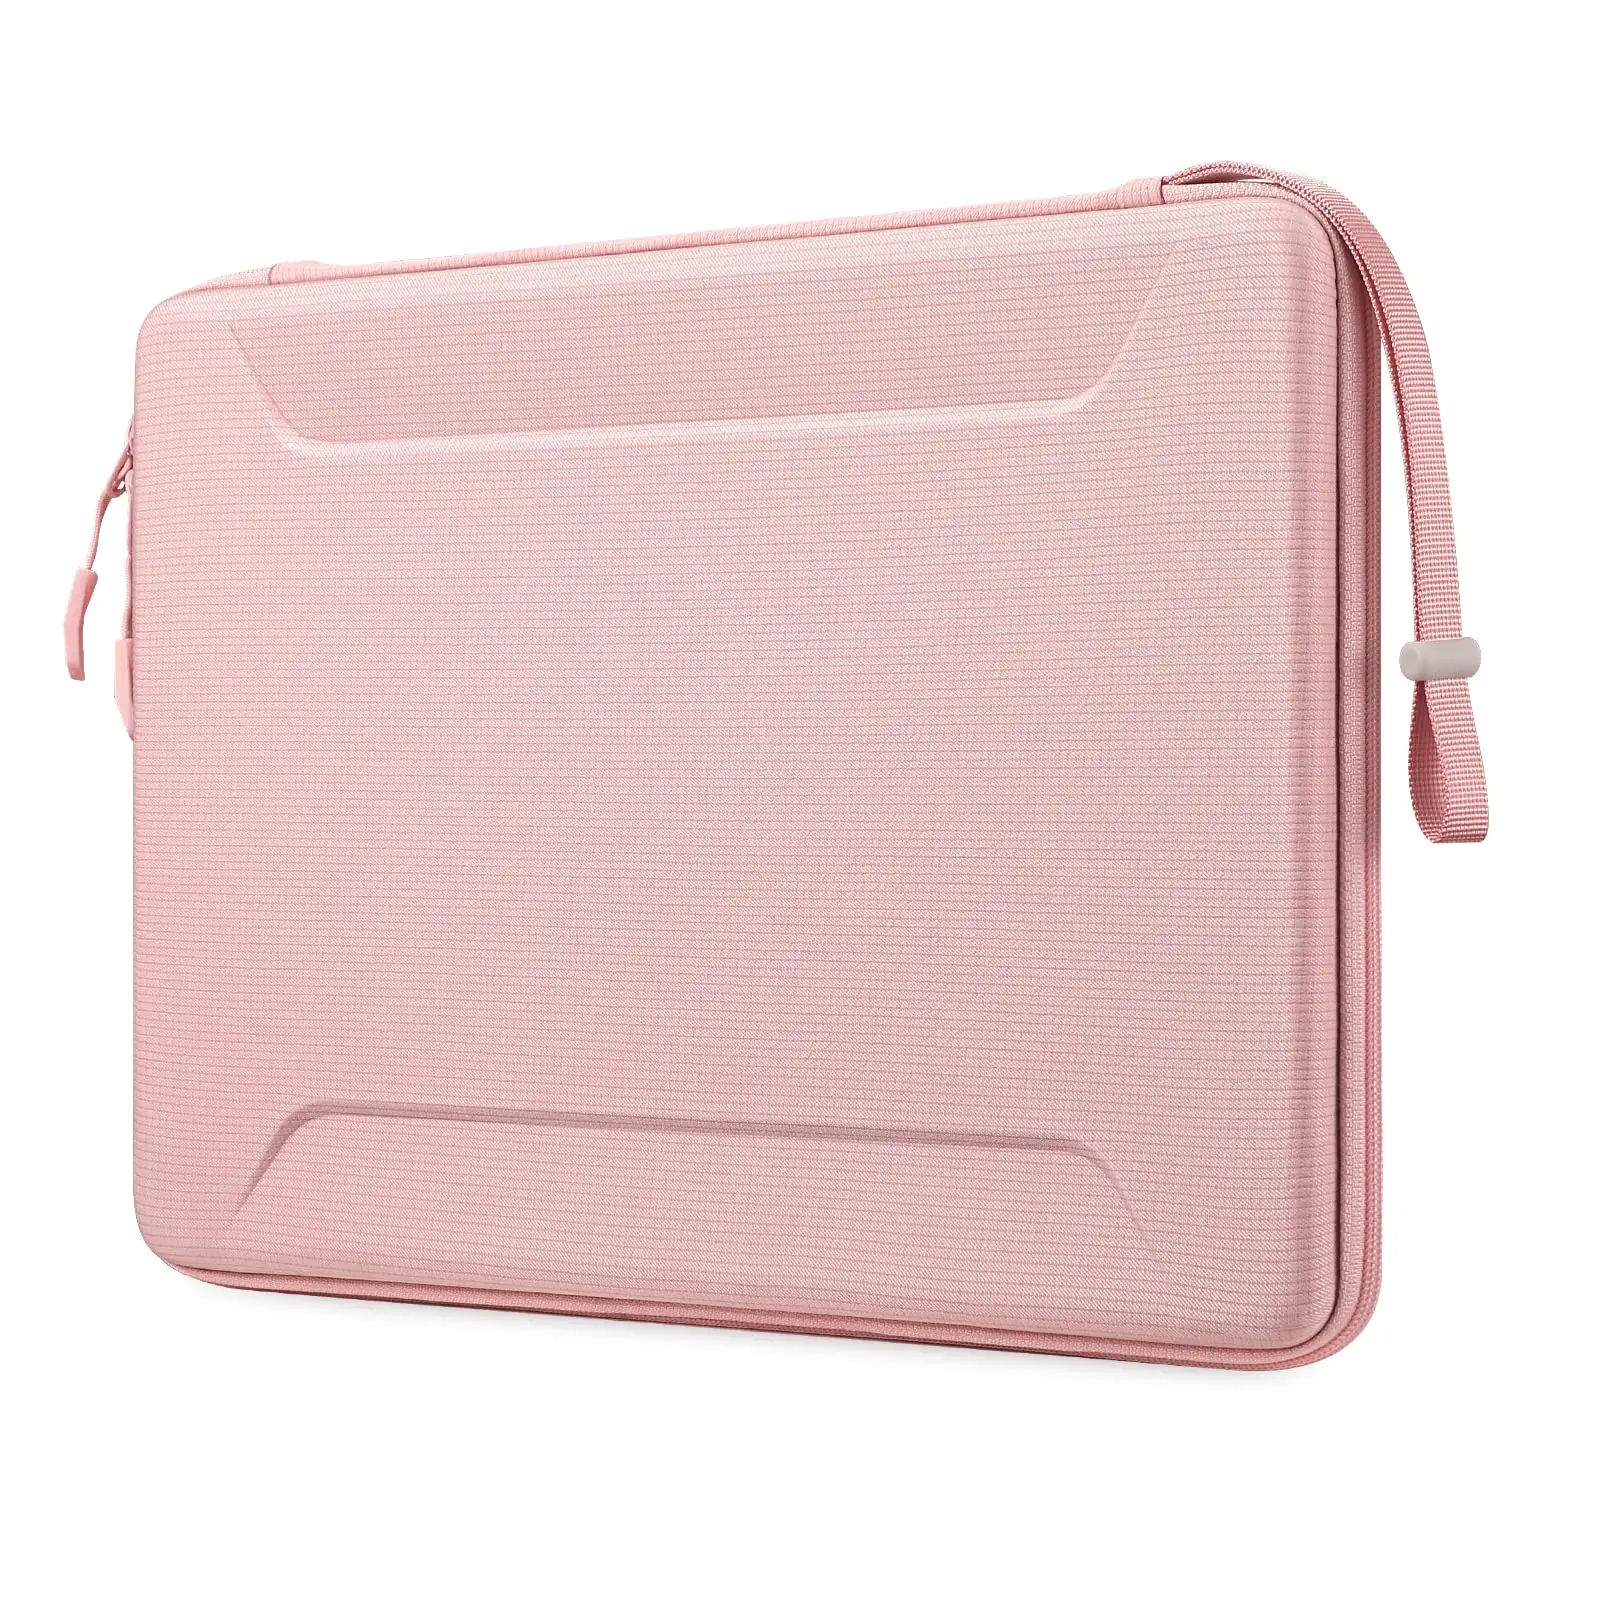 Casing pembawa cangkang keras merah muda kualitas tinggi untuk Laptop 13.3 inci dan tas bahu Tablet Eva tahan guncangan casing Tablet